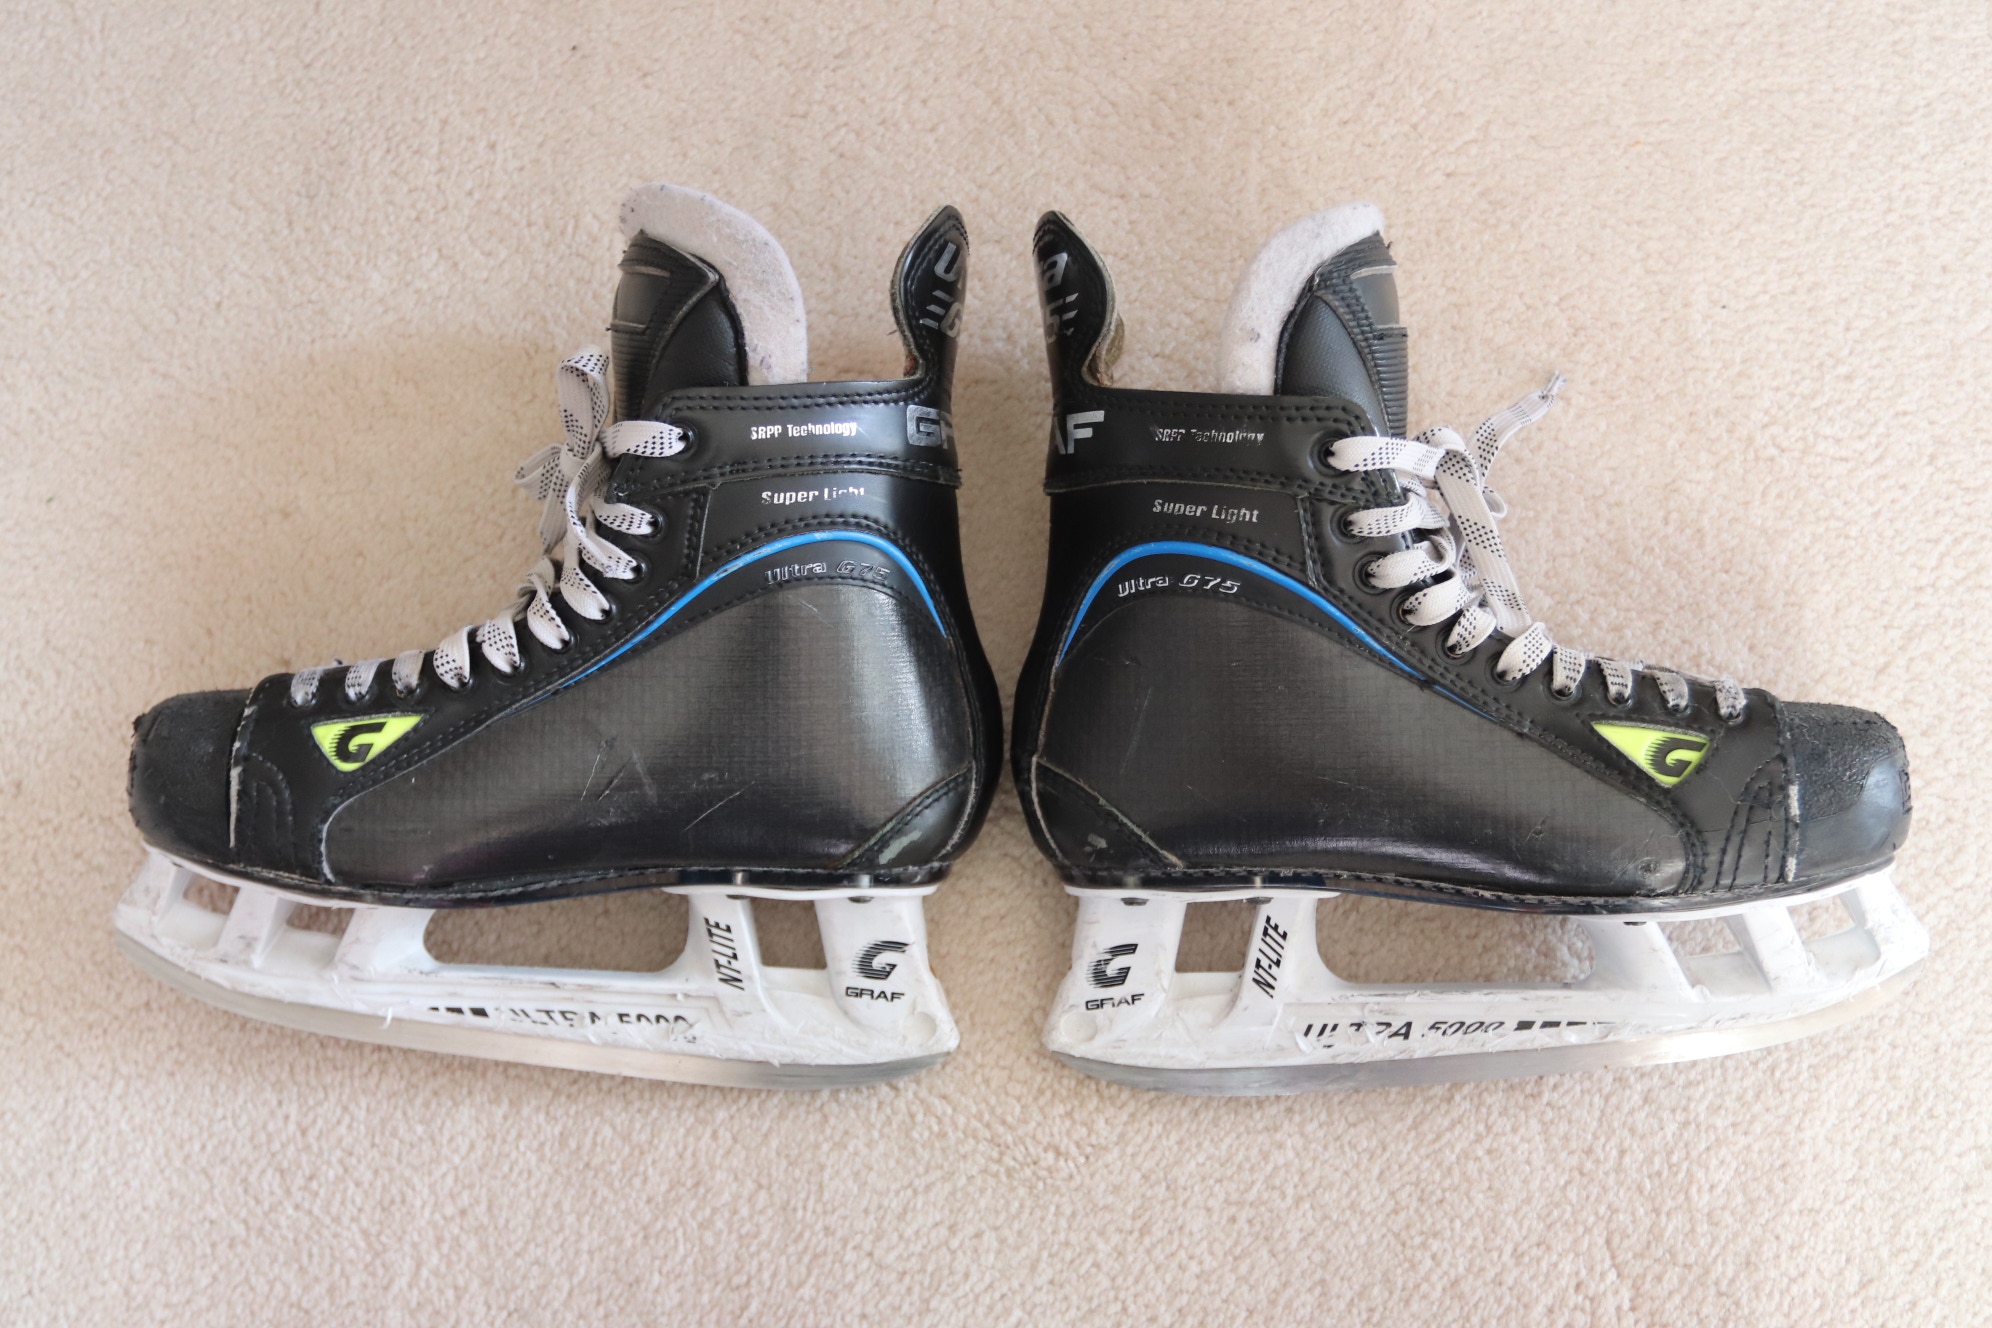 Graf Ultra G75 Hockey Skates - Size 6R